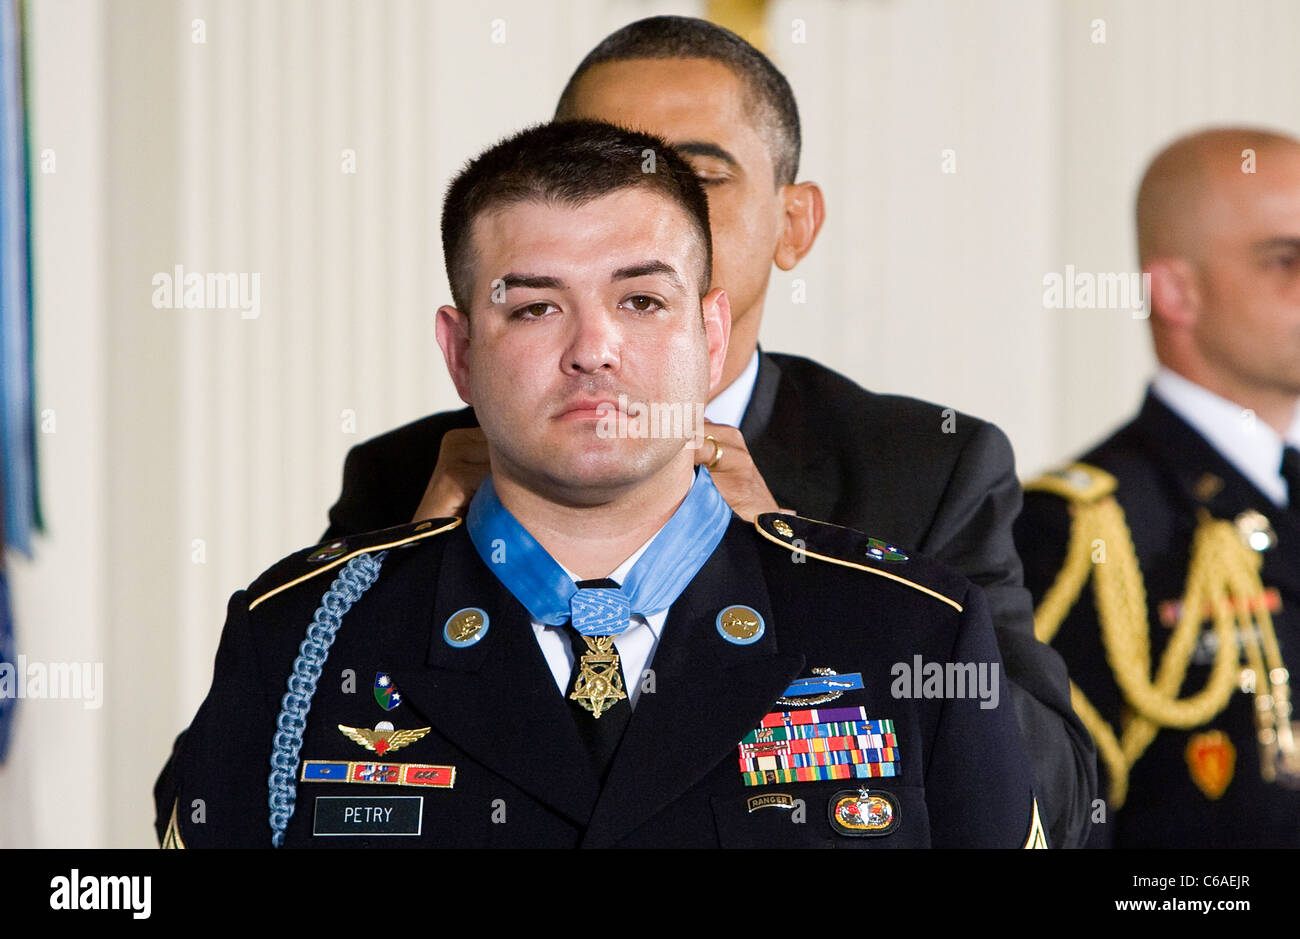 El presidente Barack Obama premios la Medalla de Honor al sargento de primera clase Leroy Petry. Foto de stock